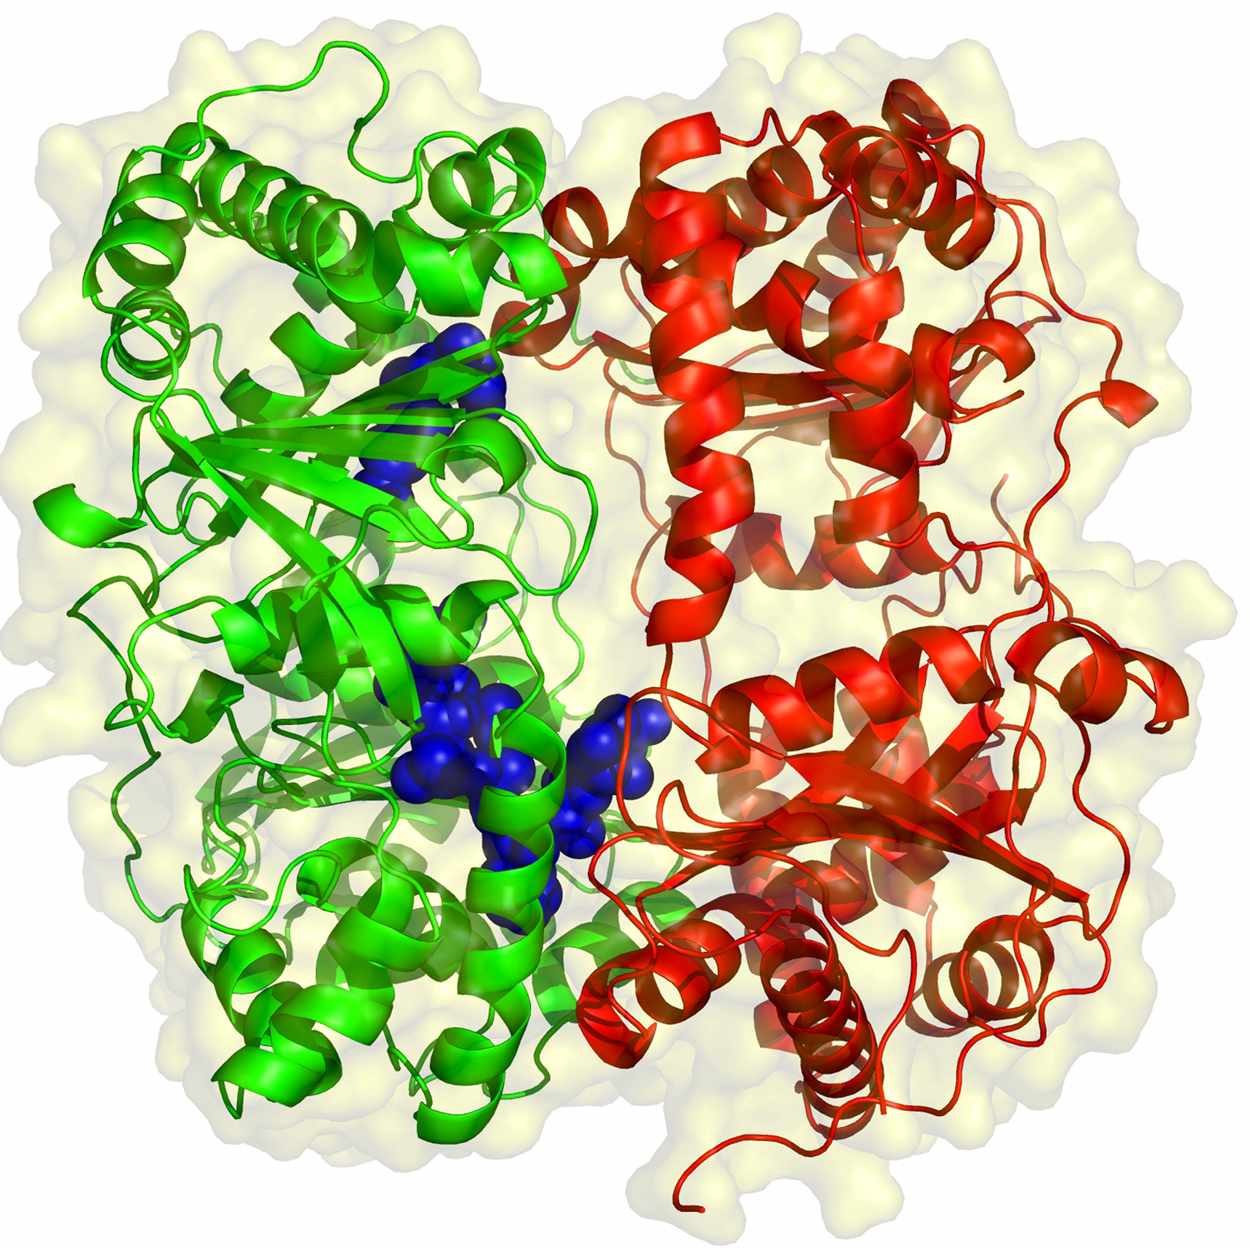 II09 enzyme.png